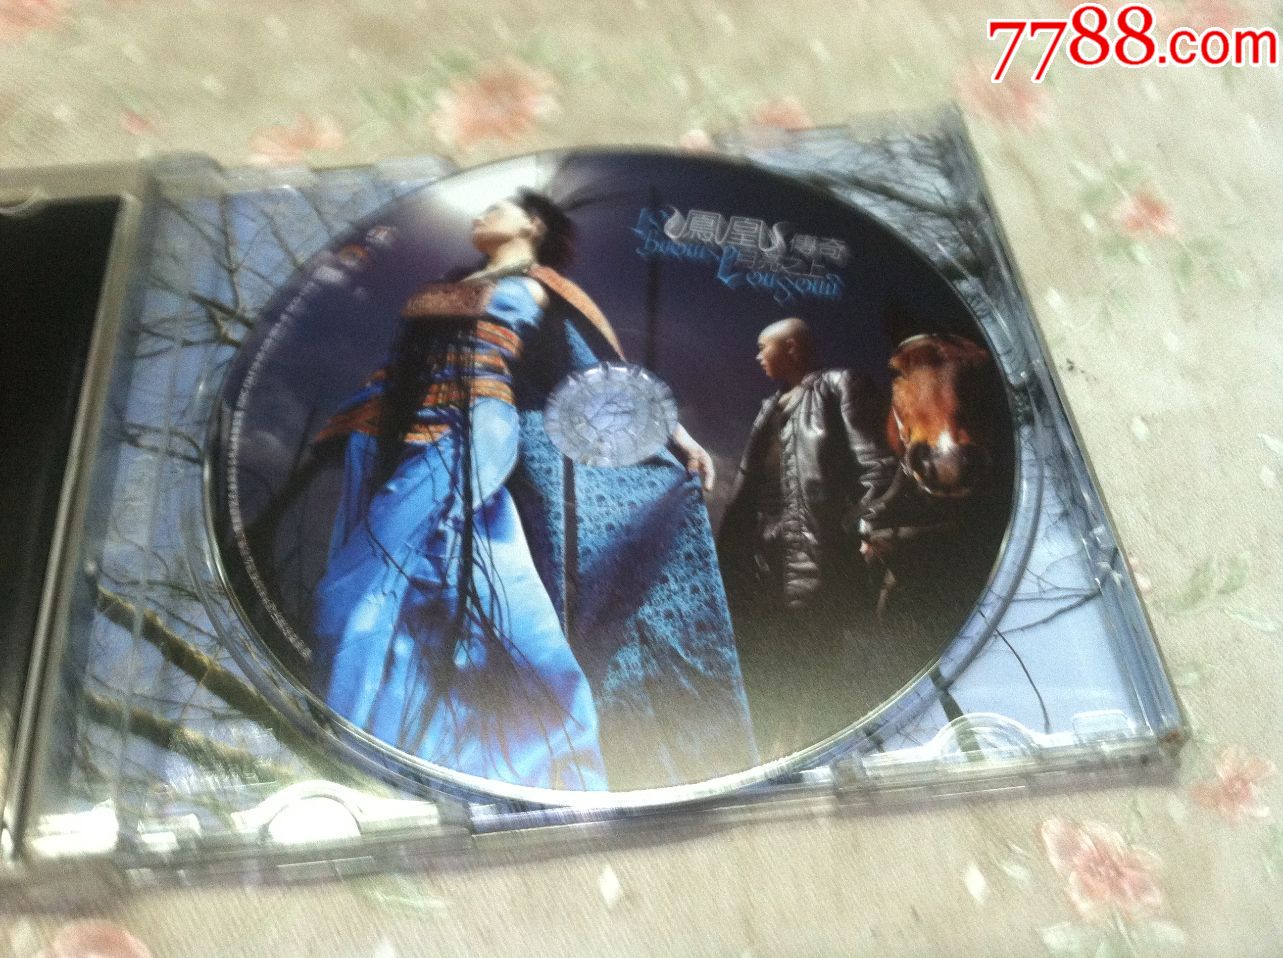 原版cd-凤凰传奇专辑-月亮之上【广东音像】